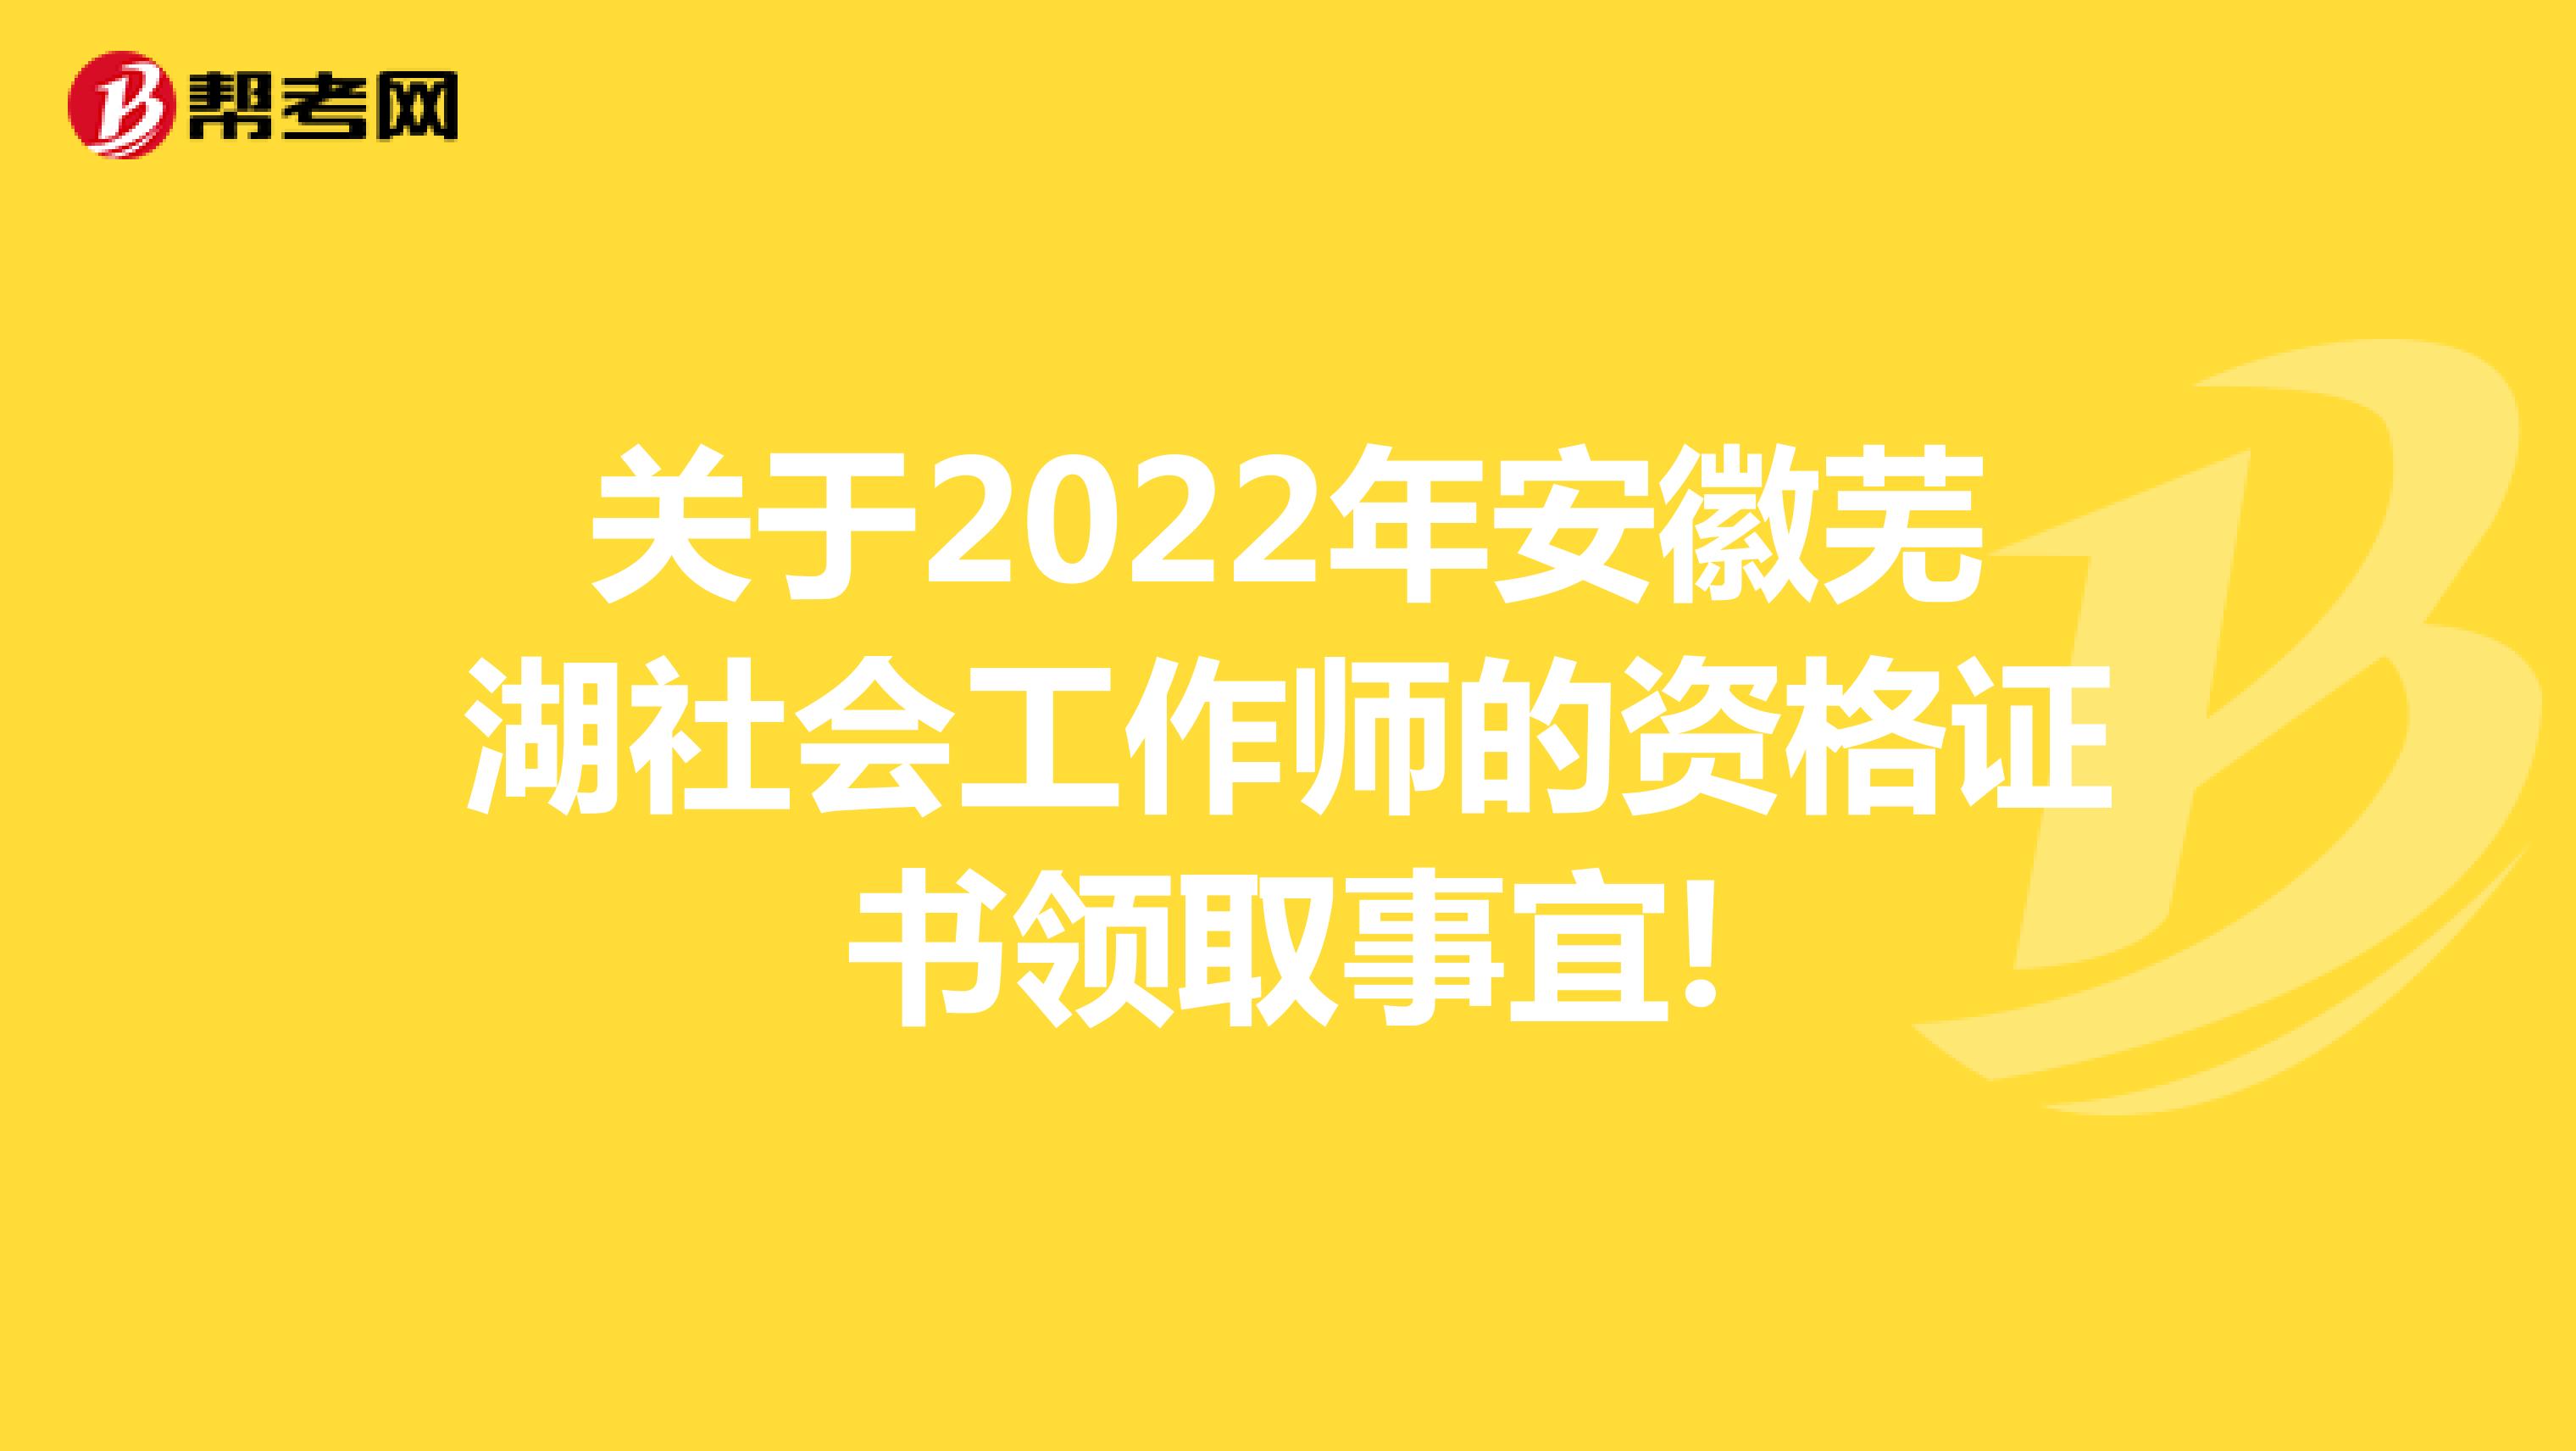 关于2022年安徽芜湖社会工作师的资格证书领取事宜!